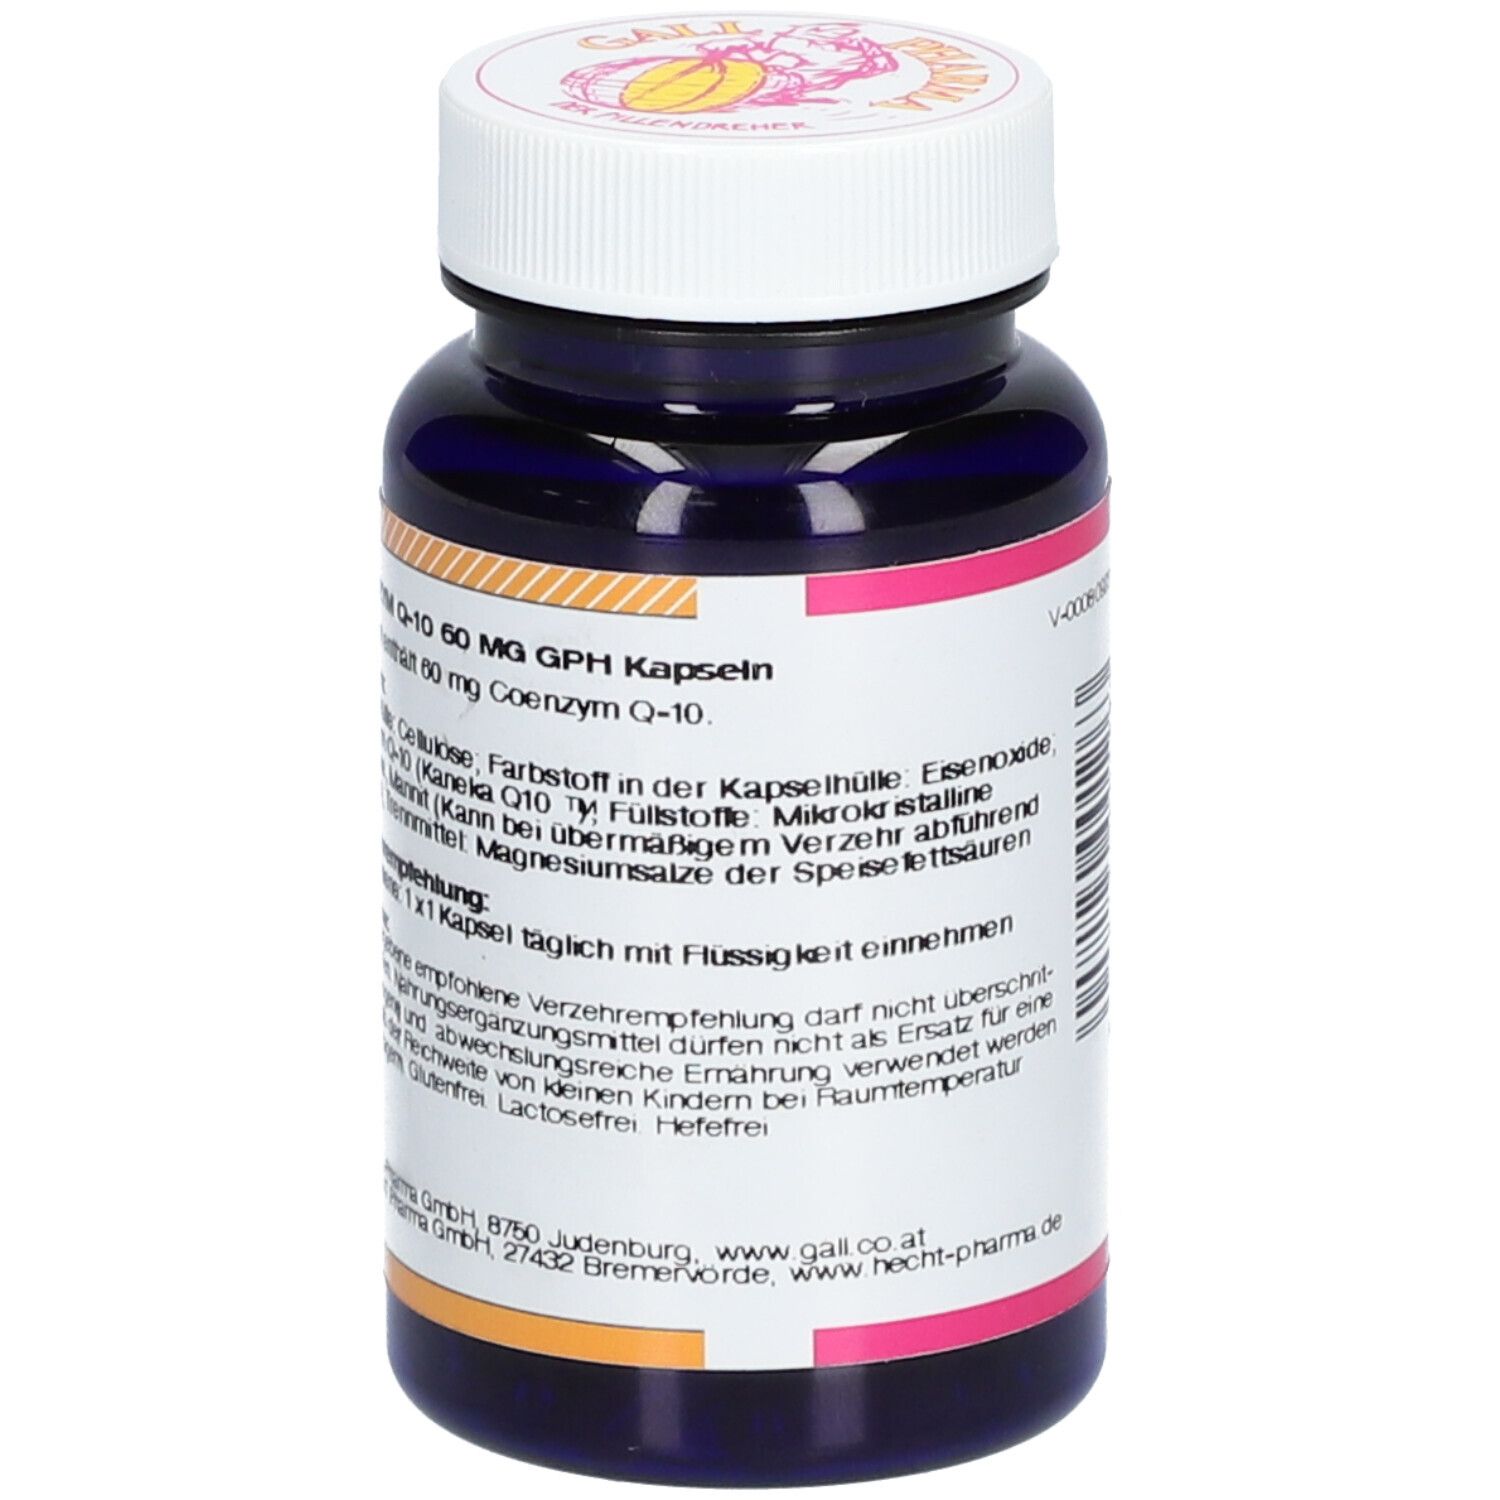 GALL PHARMA Coenzym Q-10 60 mg